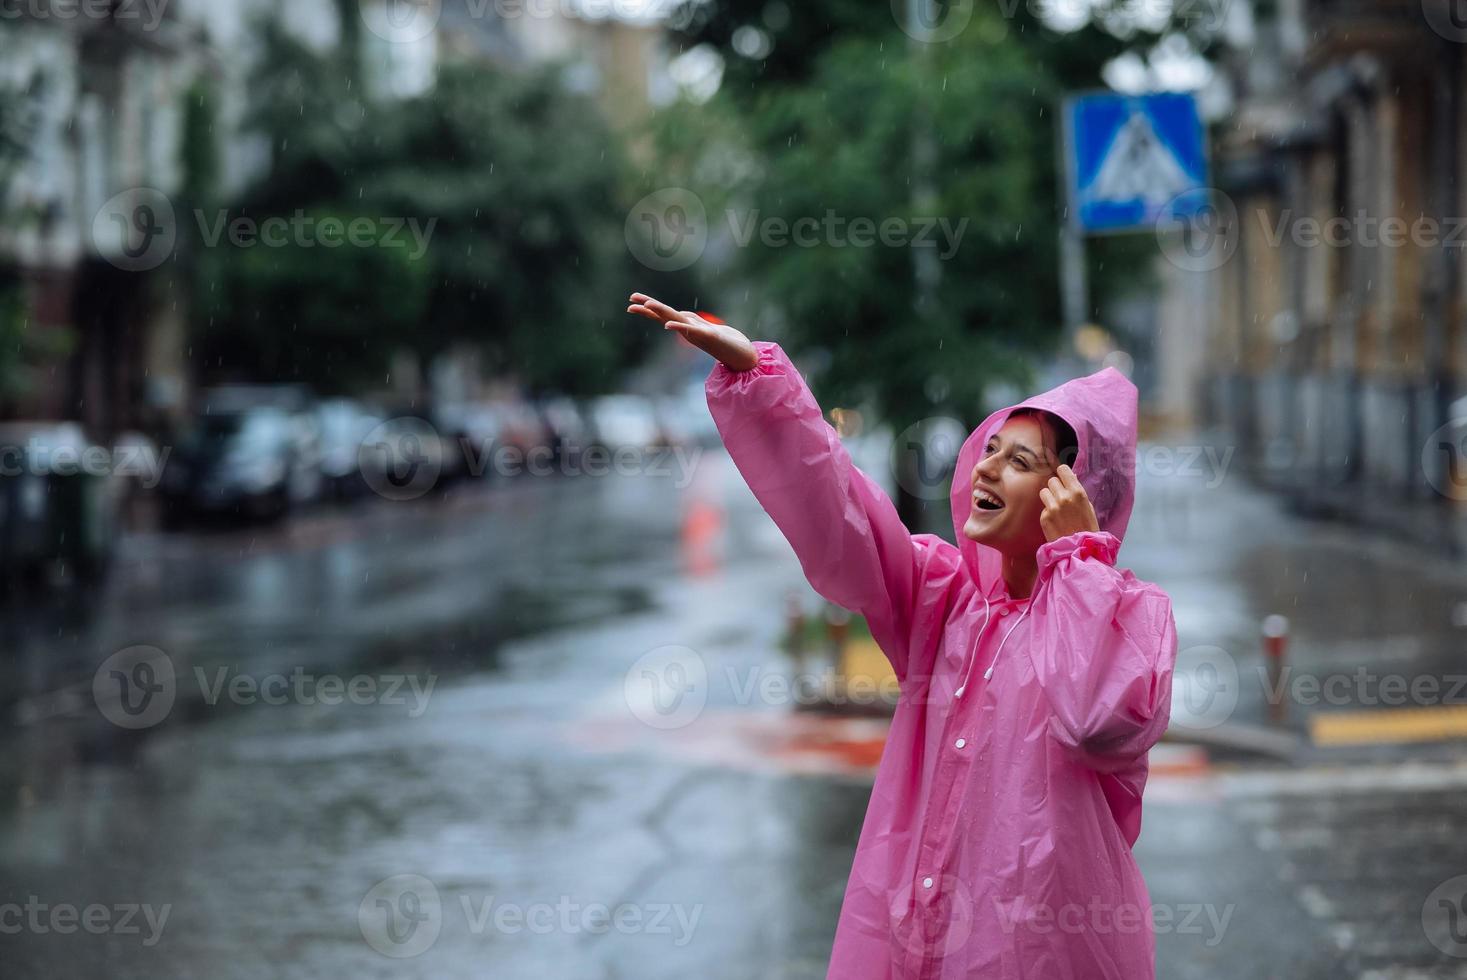 jeune femme souriante avec imperméable tout en profitant d'un jour de pluie. photo